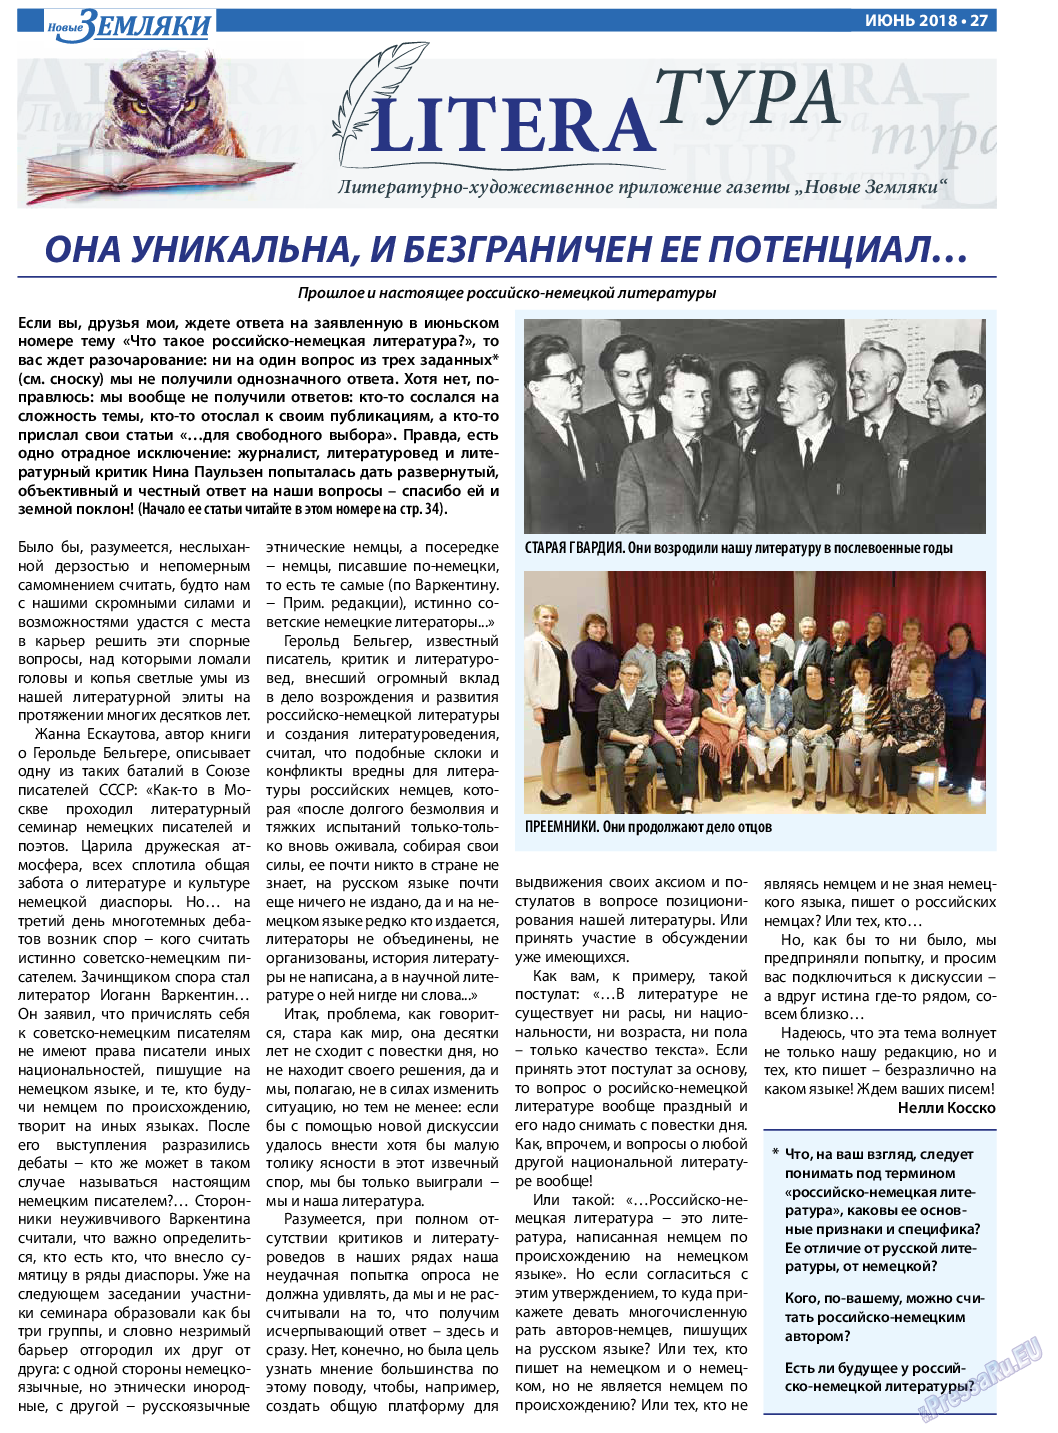 Новые Земляки, газета. 2018 №6 стр.27